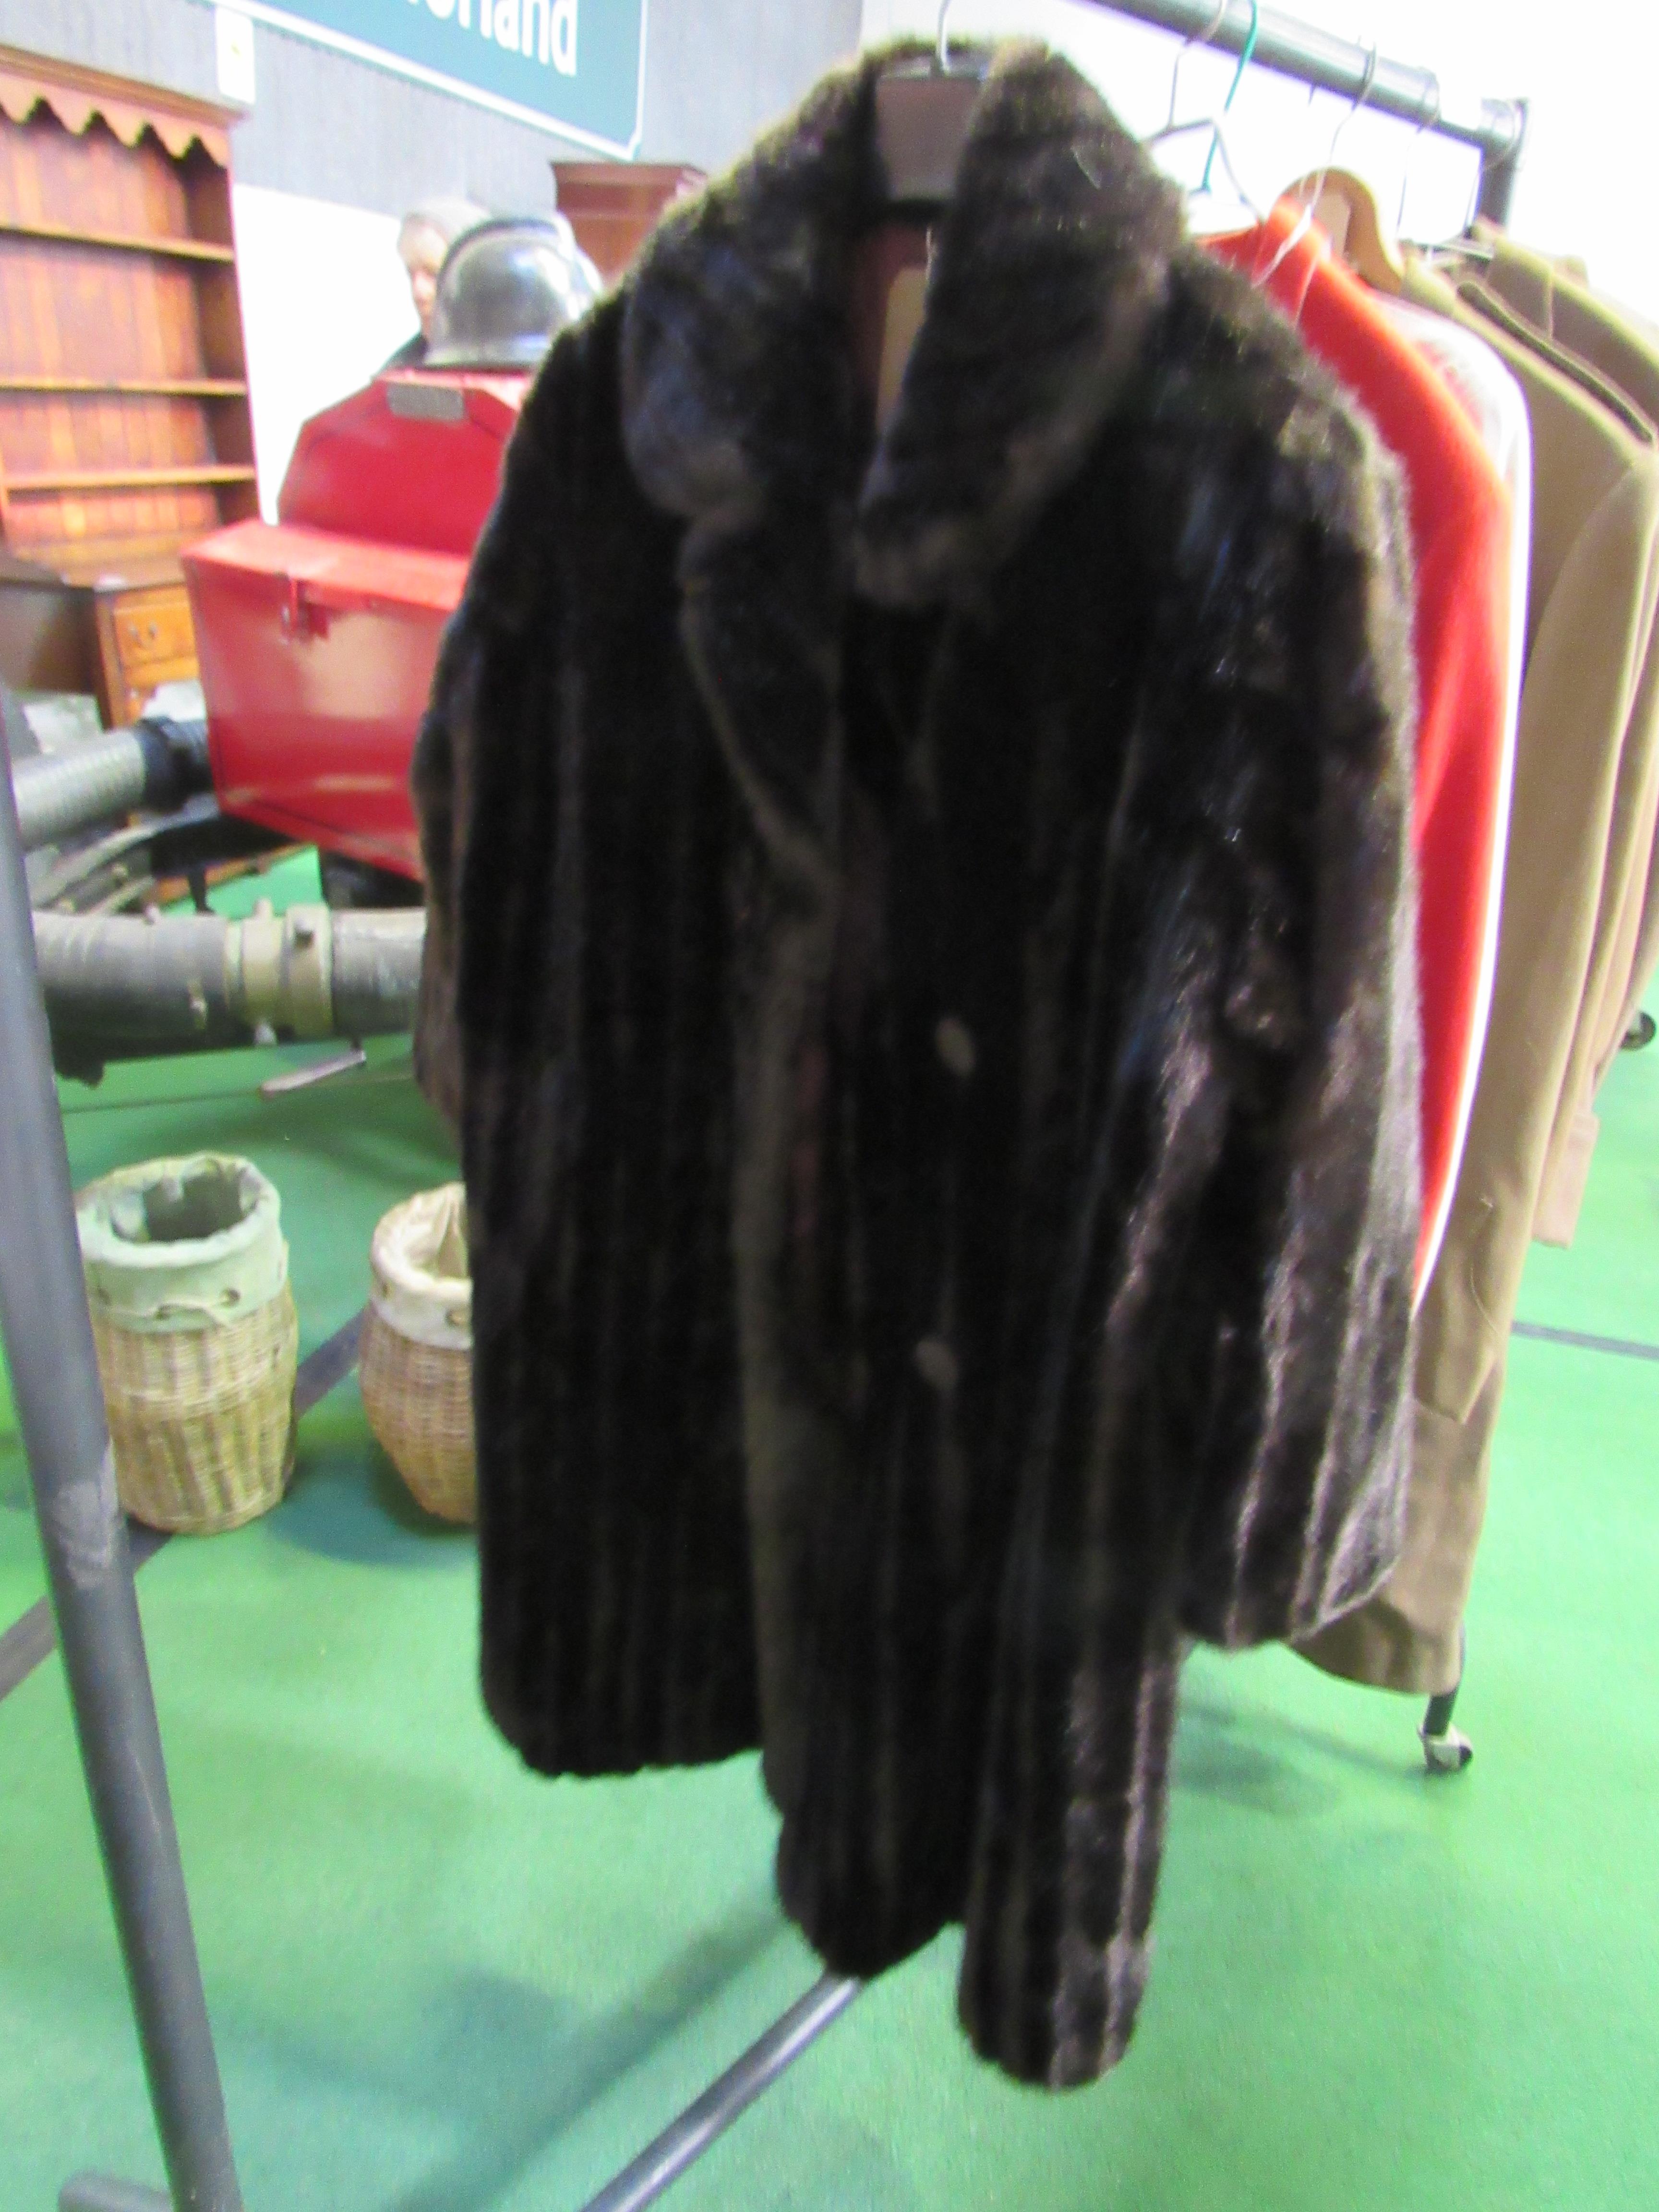 Dynathink simulated long dark brown fur coat. Estimate 20-40.